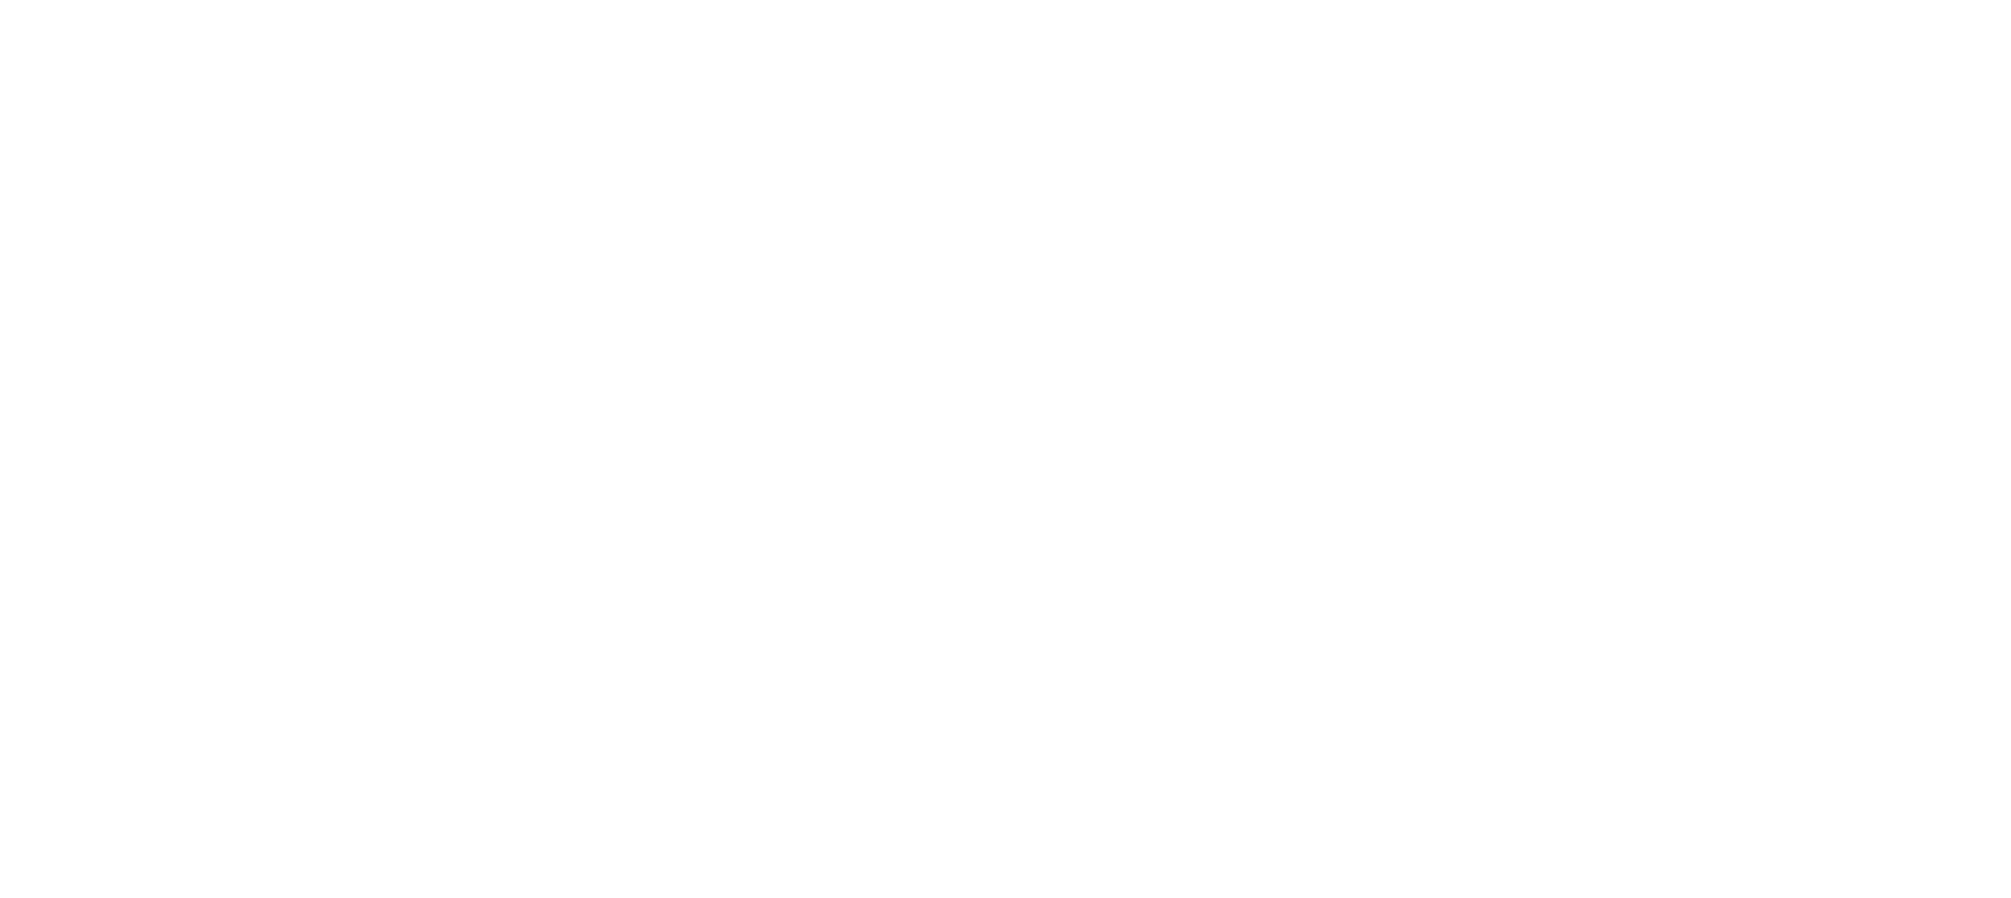 Poliisiammattikorkeakoulun tunnus, josta linkki polamk.fi etusivulle.